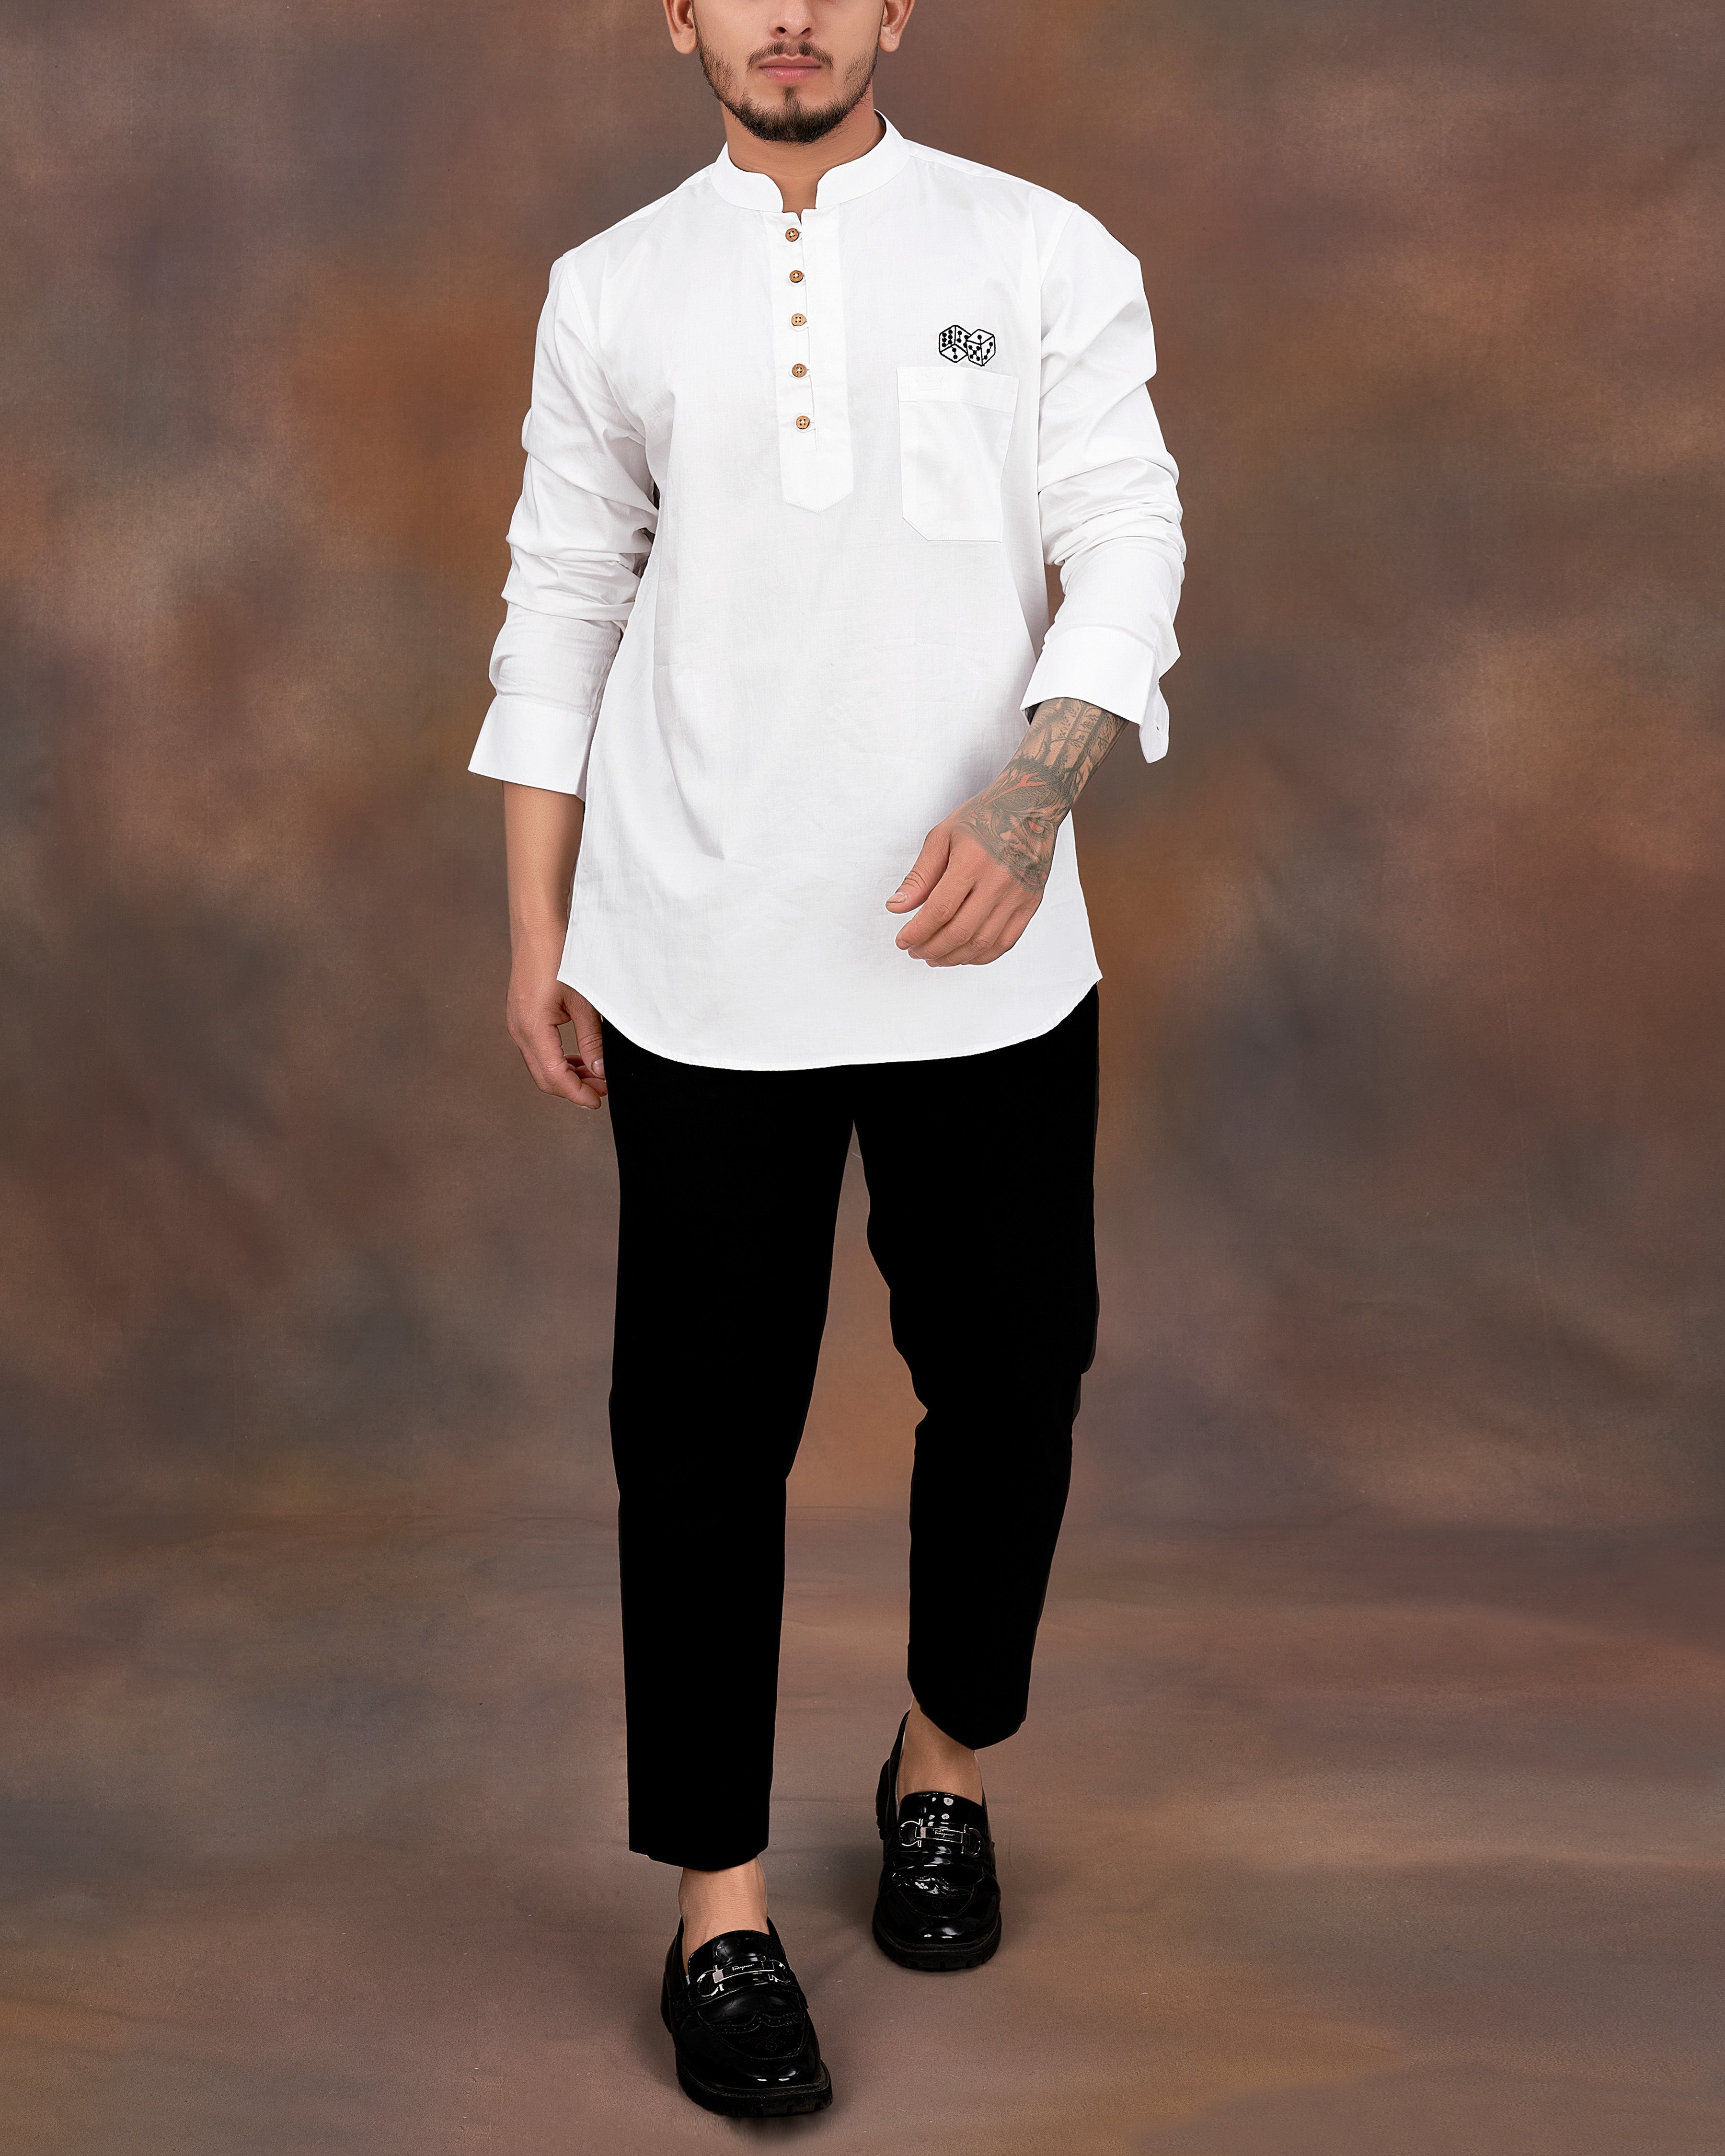 Bright White Subtle Sheen Dice Embroidered Super Soft Premium Cotton Kurta Shirt 2670-KS-E030-38,2670-KS-E030-H-38,2670-KS-E030-39,2670-KS-E030-H-39,2670-KS-E030-40,2670-KS-E030-H-40,2670-KS-E030-42,2670-KS-E030-H-42,2670-KS-E030-44,2670-KS-E030-H-44,2670-KS-E030-46,2670-KS-E030-H-46,2670-KS-E030-48,2670-KS-E030-H-48,2670-KS-E030-50,2670-KS-E030-H-50,2670-KS-E030-52,2670-KS-E030-H-52